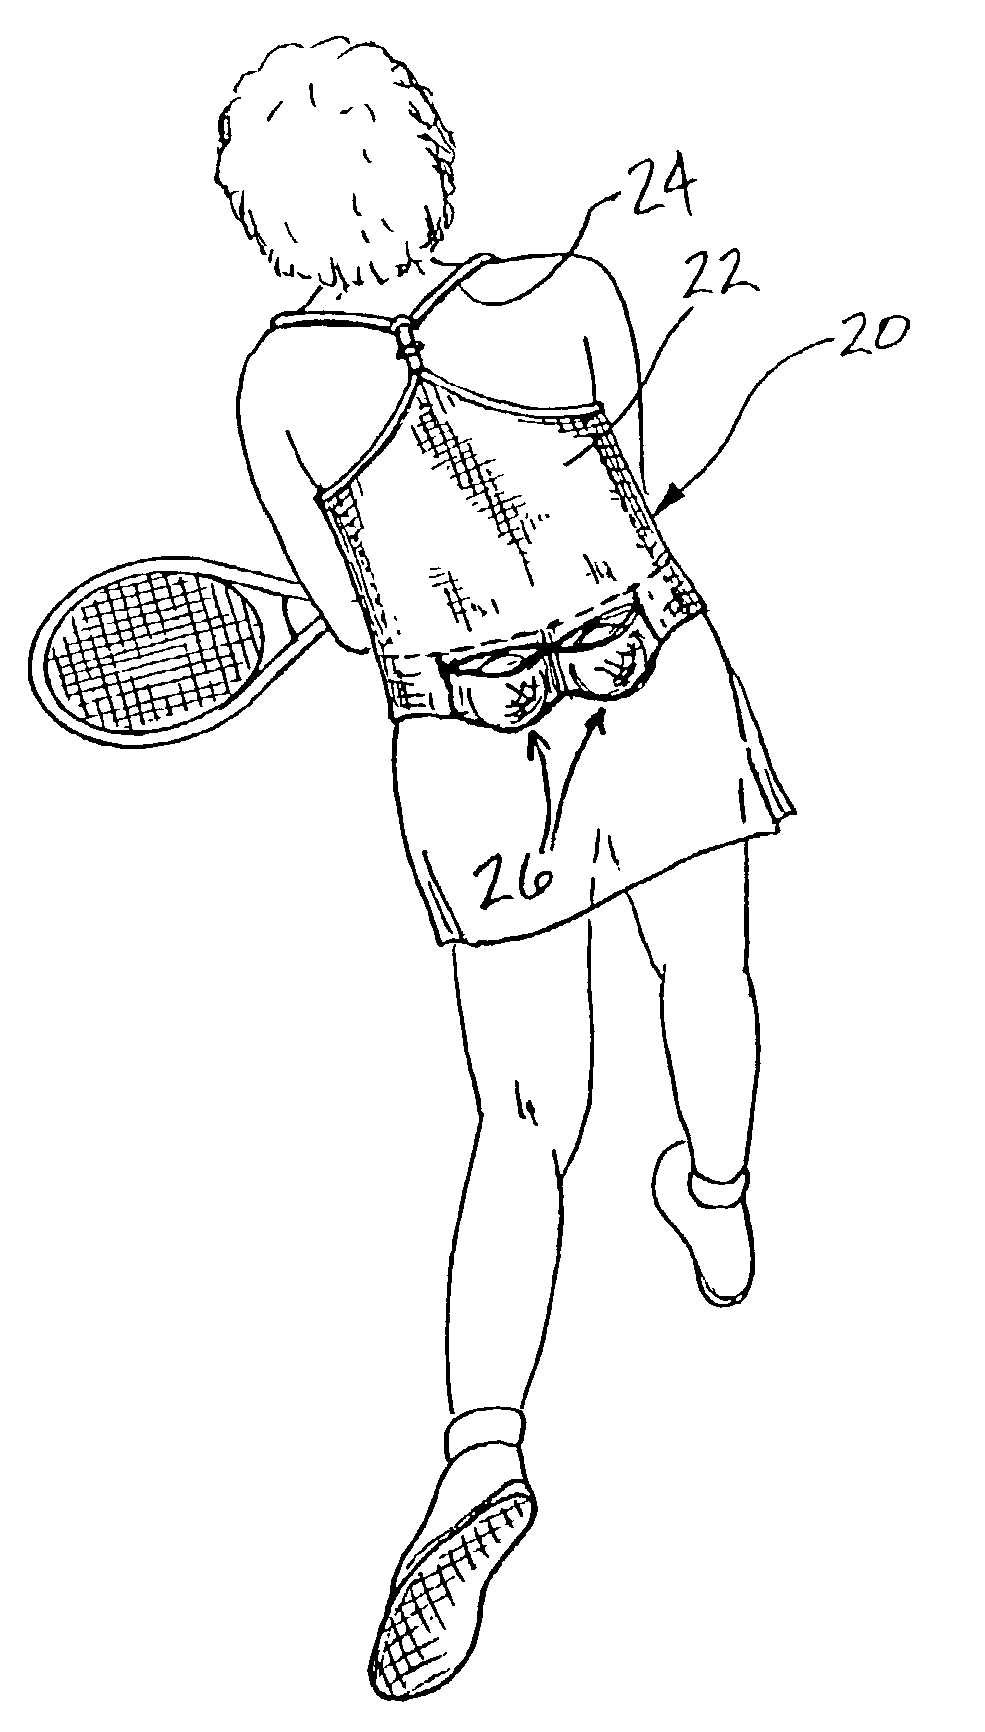 Tennis vest having knit-in ball pockets